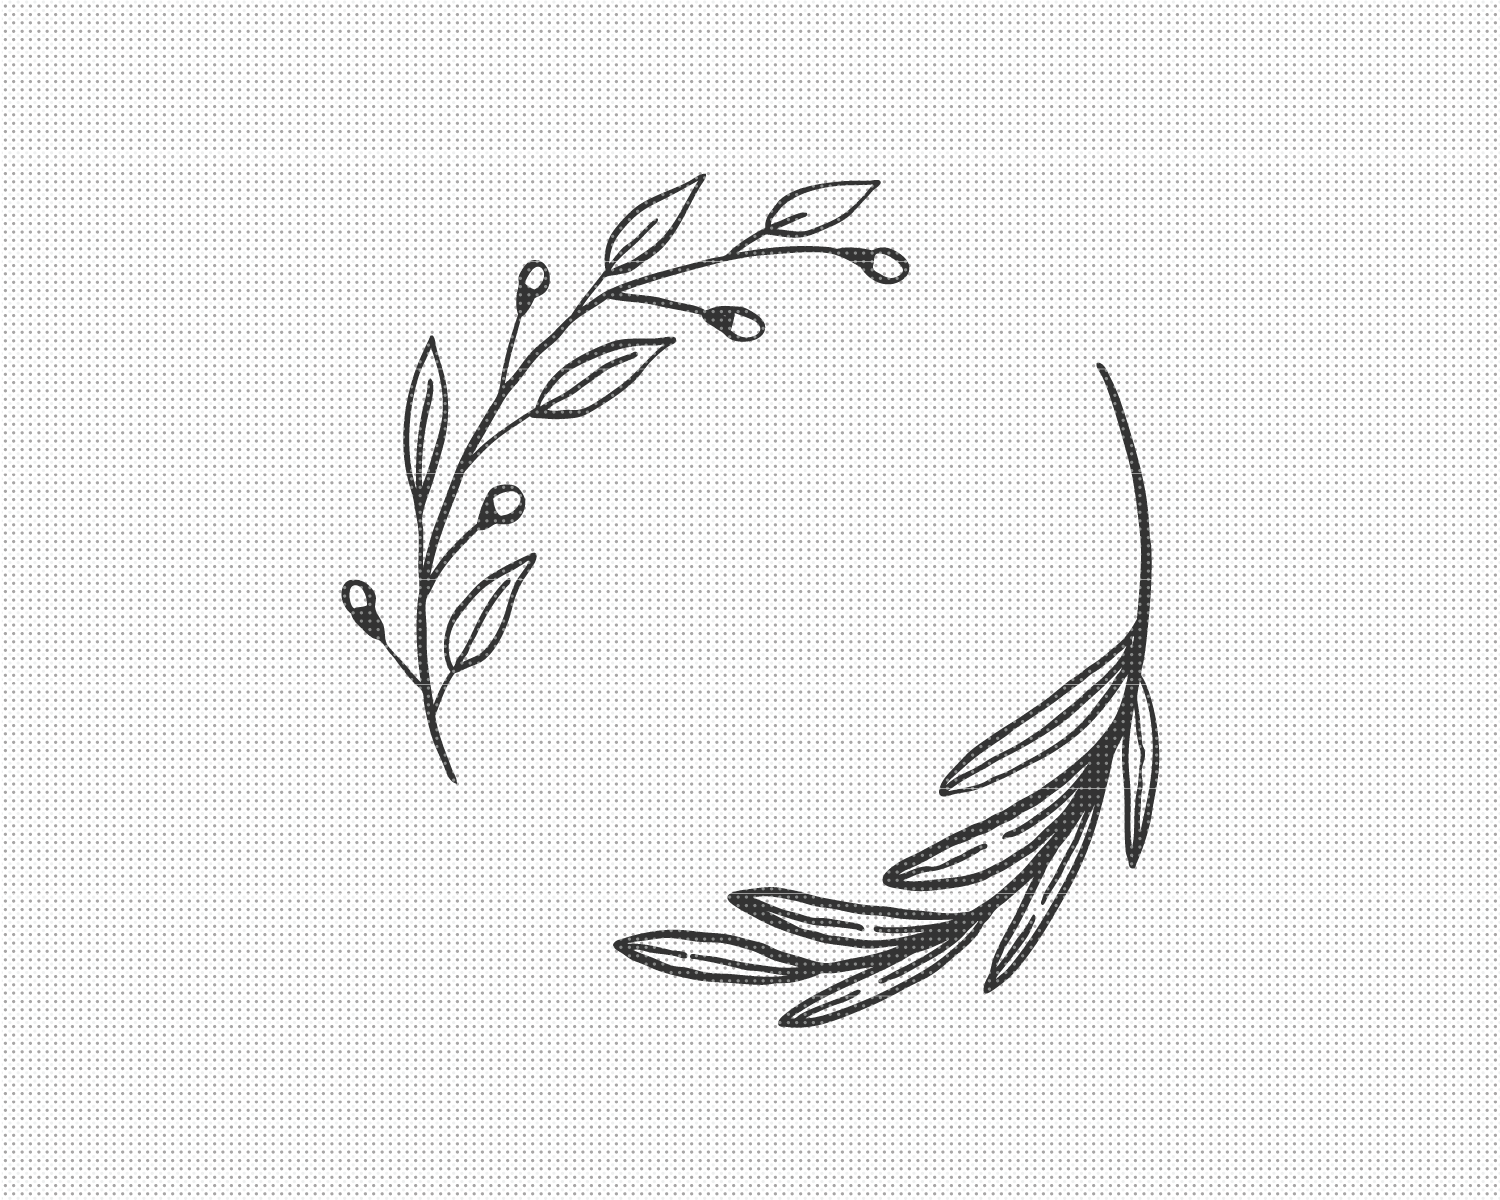 Floral Wreath SVG File - Pixelcolours